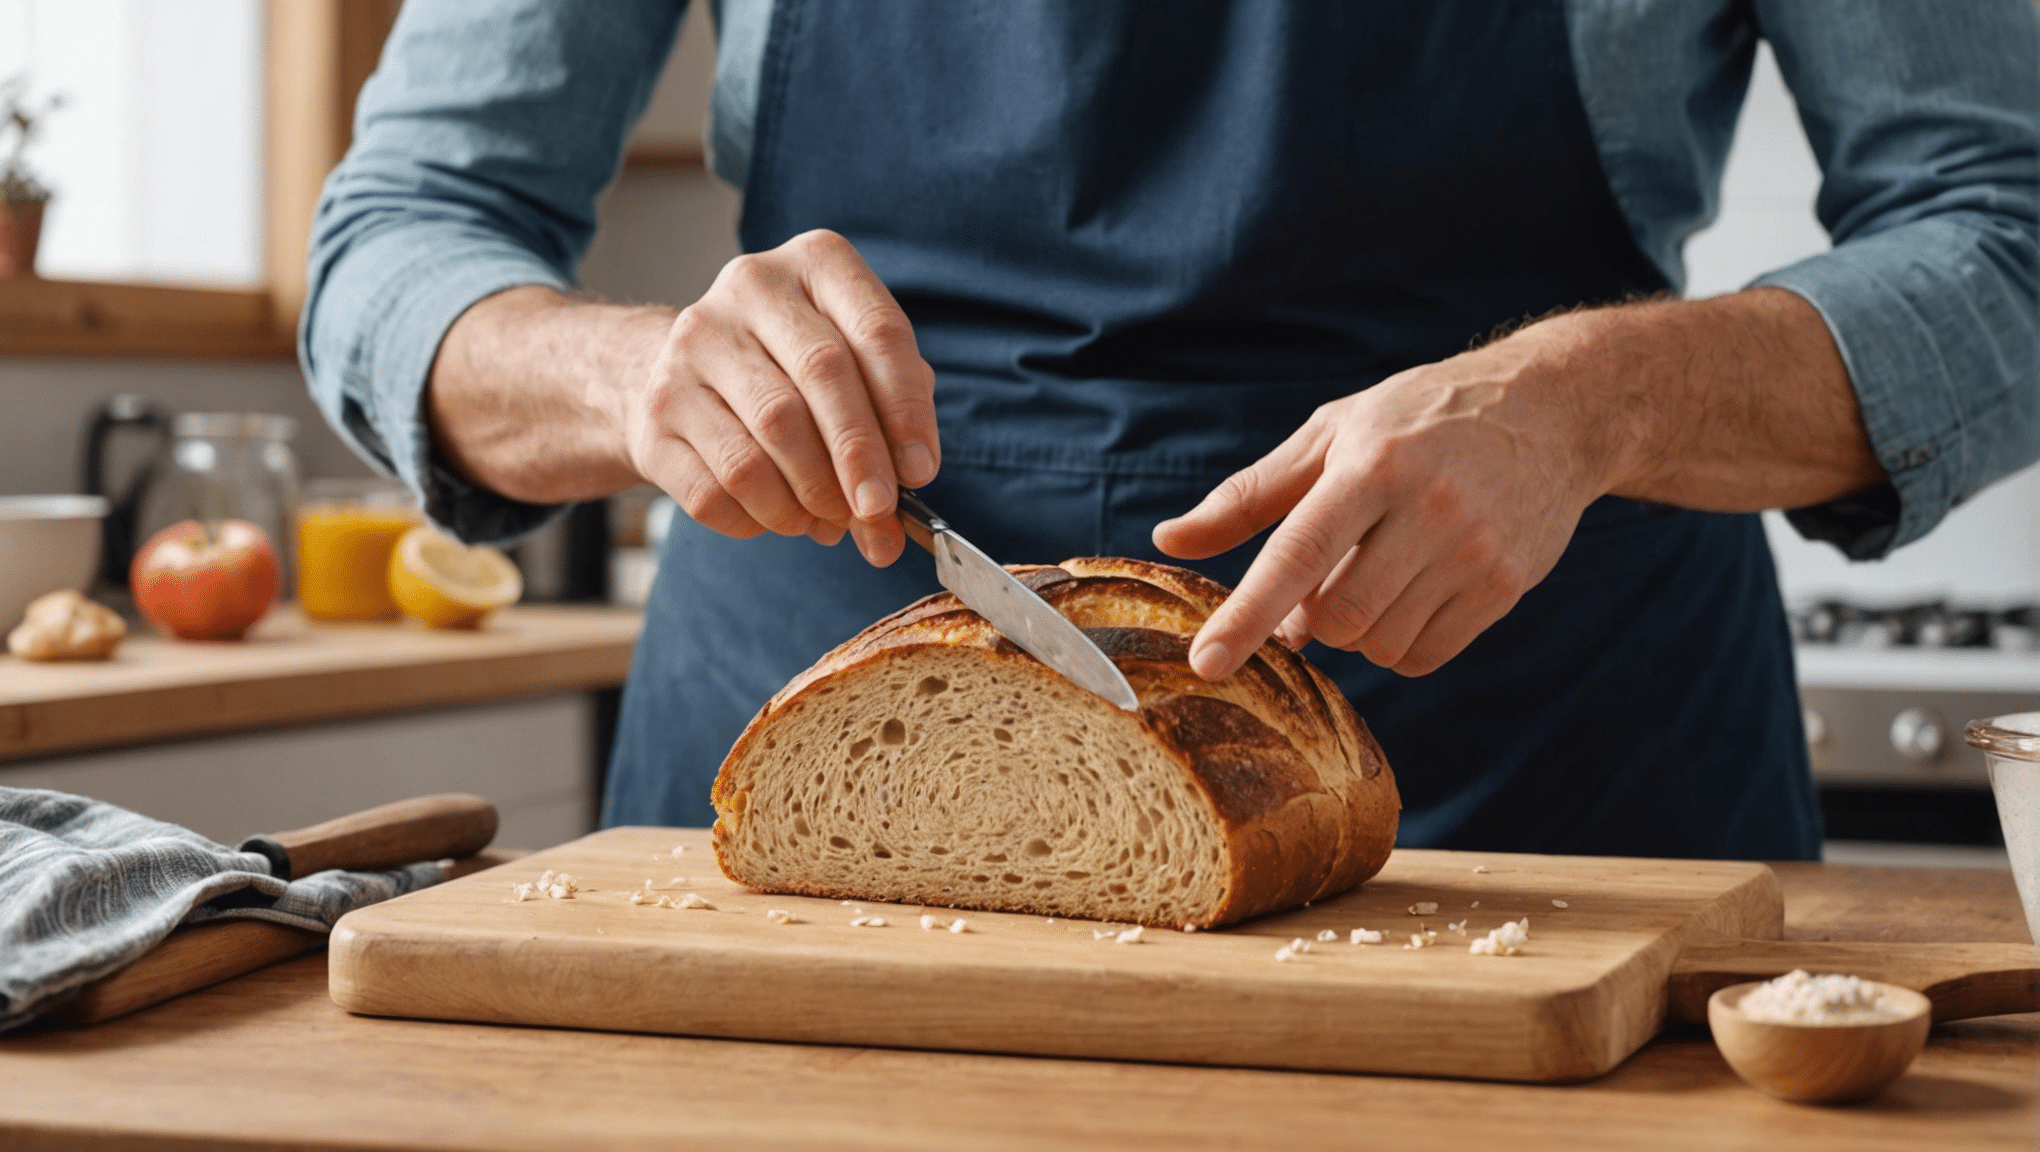 découvrez comment apprendre à faire son pain maison avec nos conseils et recettes faciles. devenez un expert en boulangerie et régalez-vous avec du pain fait maison !